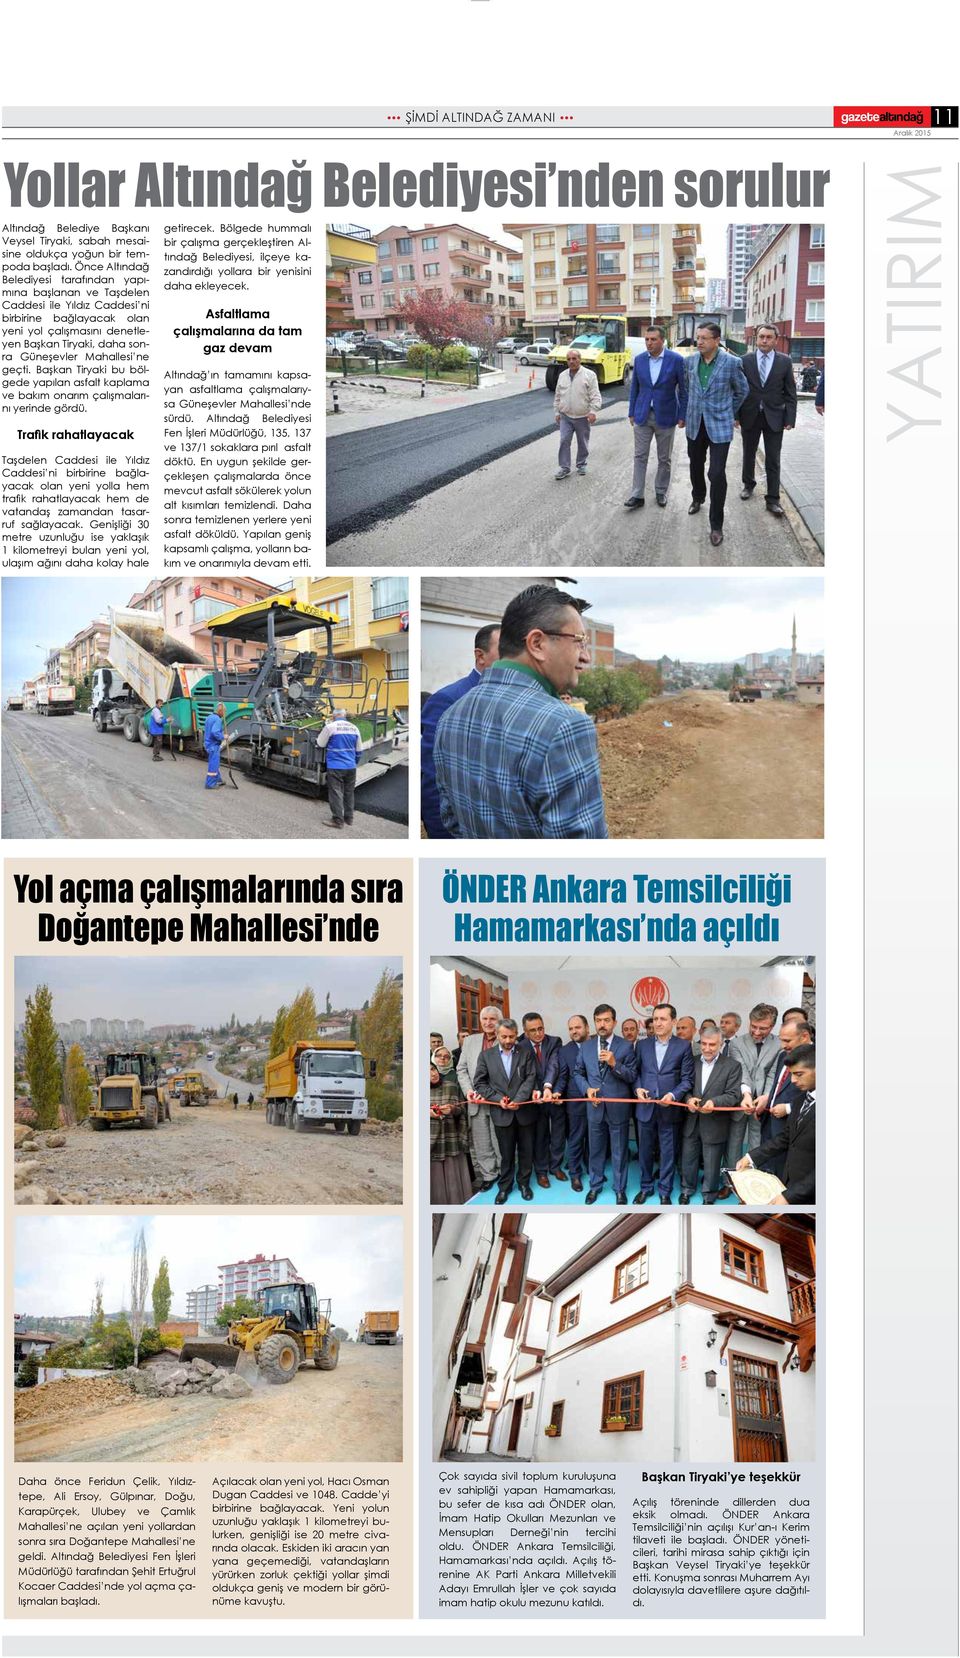 Mahallesi ne geçti. Başkan Tiryaki bu bölgede yapılan asfalt kaplama ve bakım onarım çalışmalarını yerinde gördü.